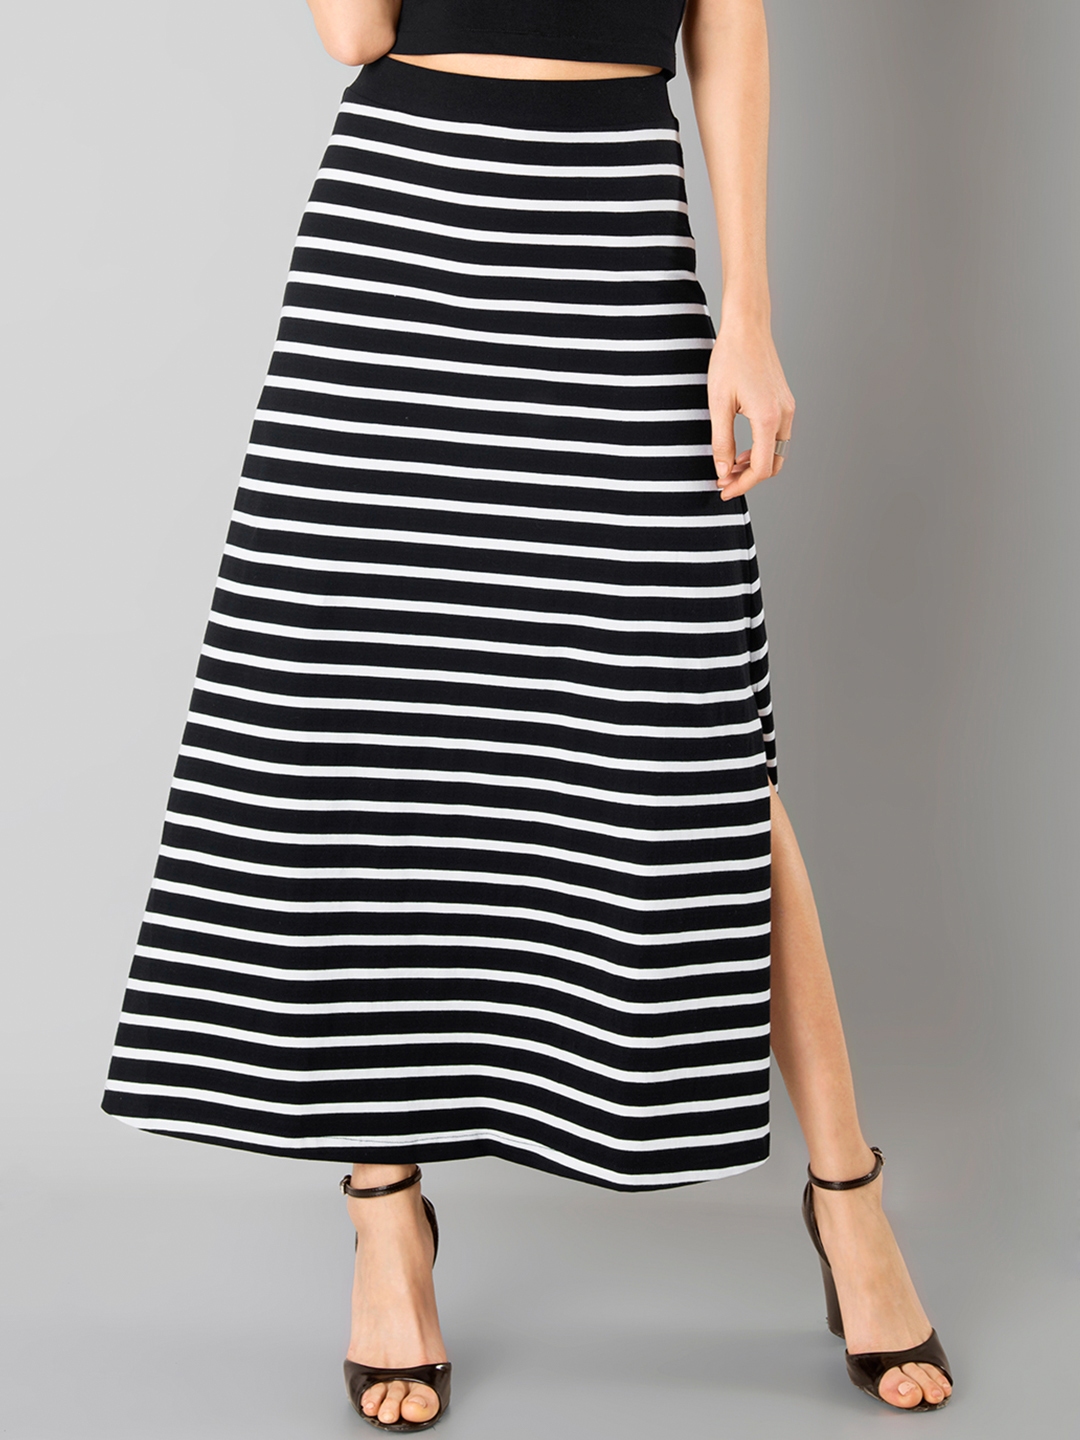 Buy FabAlley Black & White Striped Maxi Skirt - Skirts for Women ...